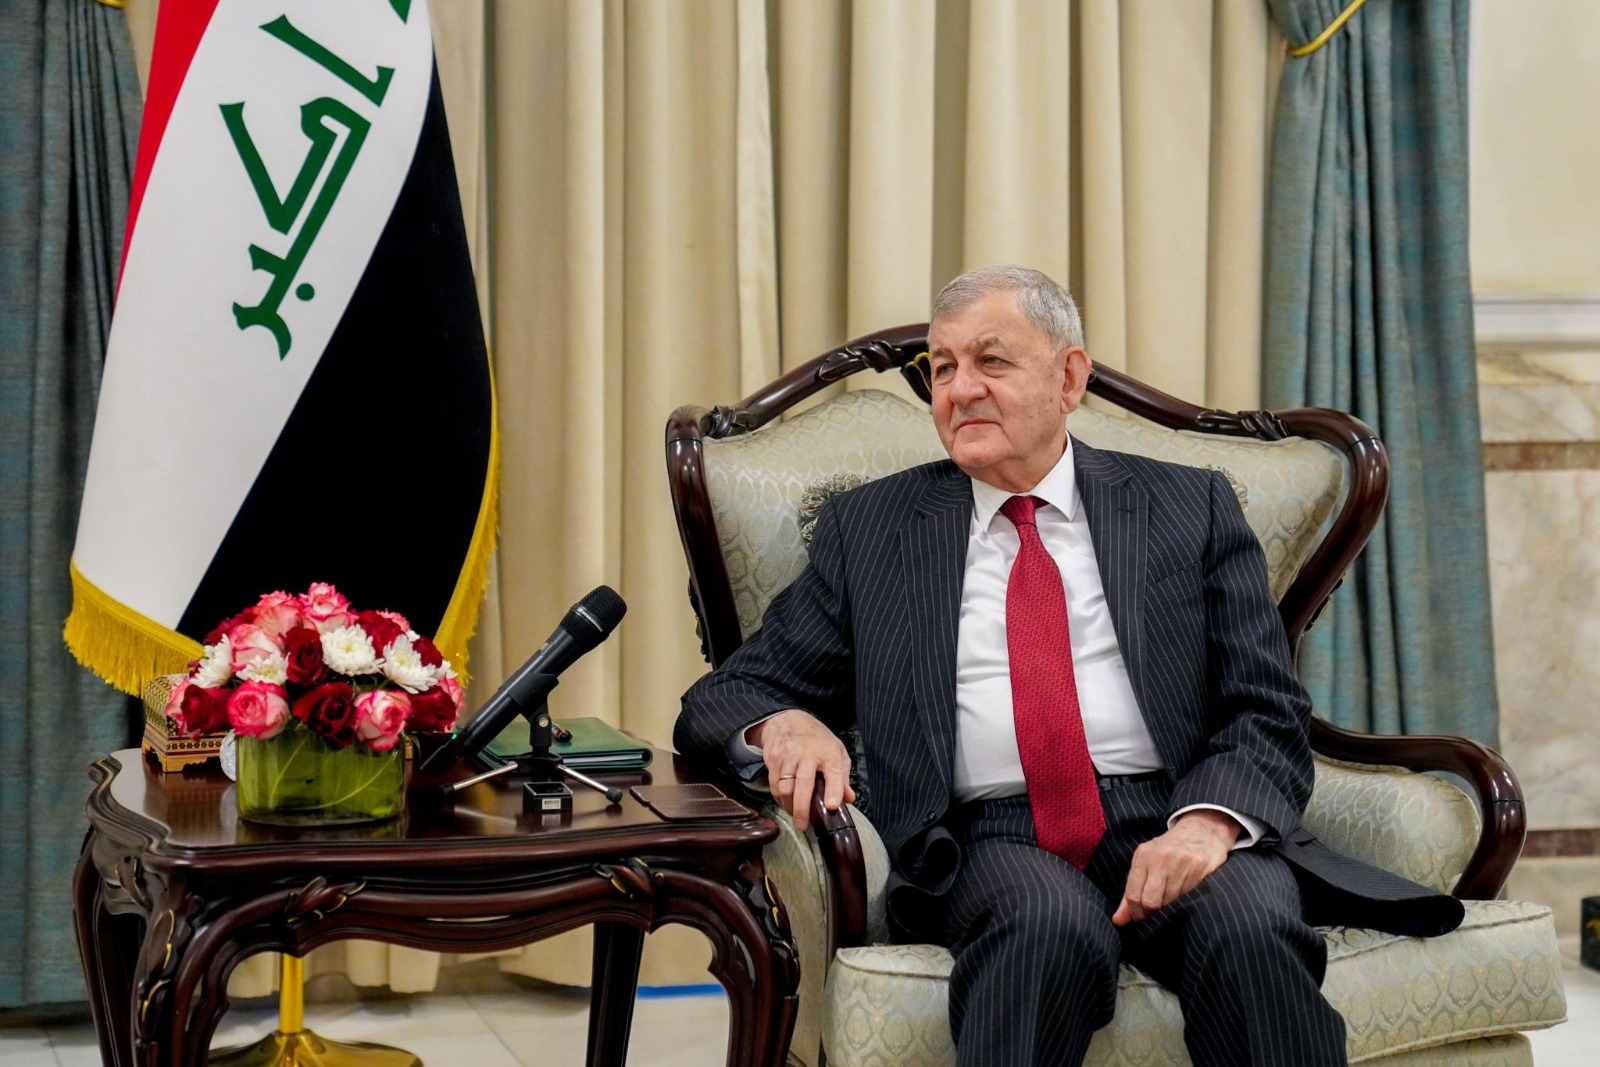 رئيس العراقي يدلي بتصريح جديد حول الخلافات بين اربيل وبغداد: يمكن حلّها